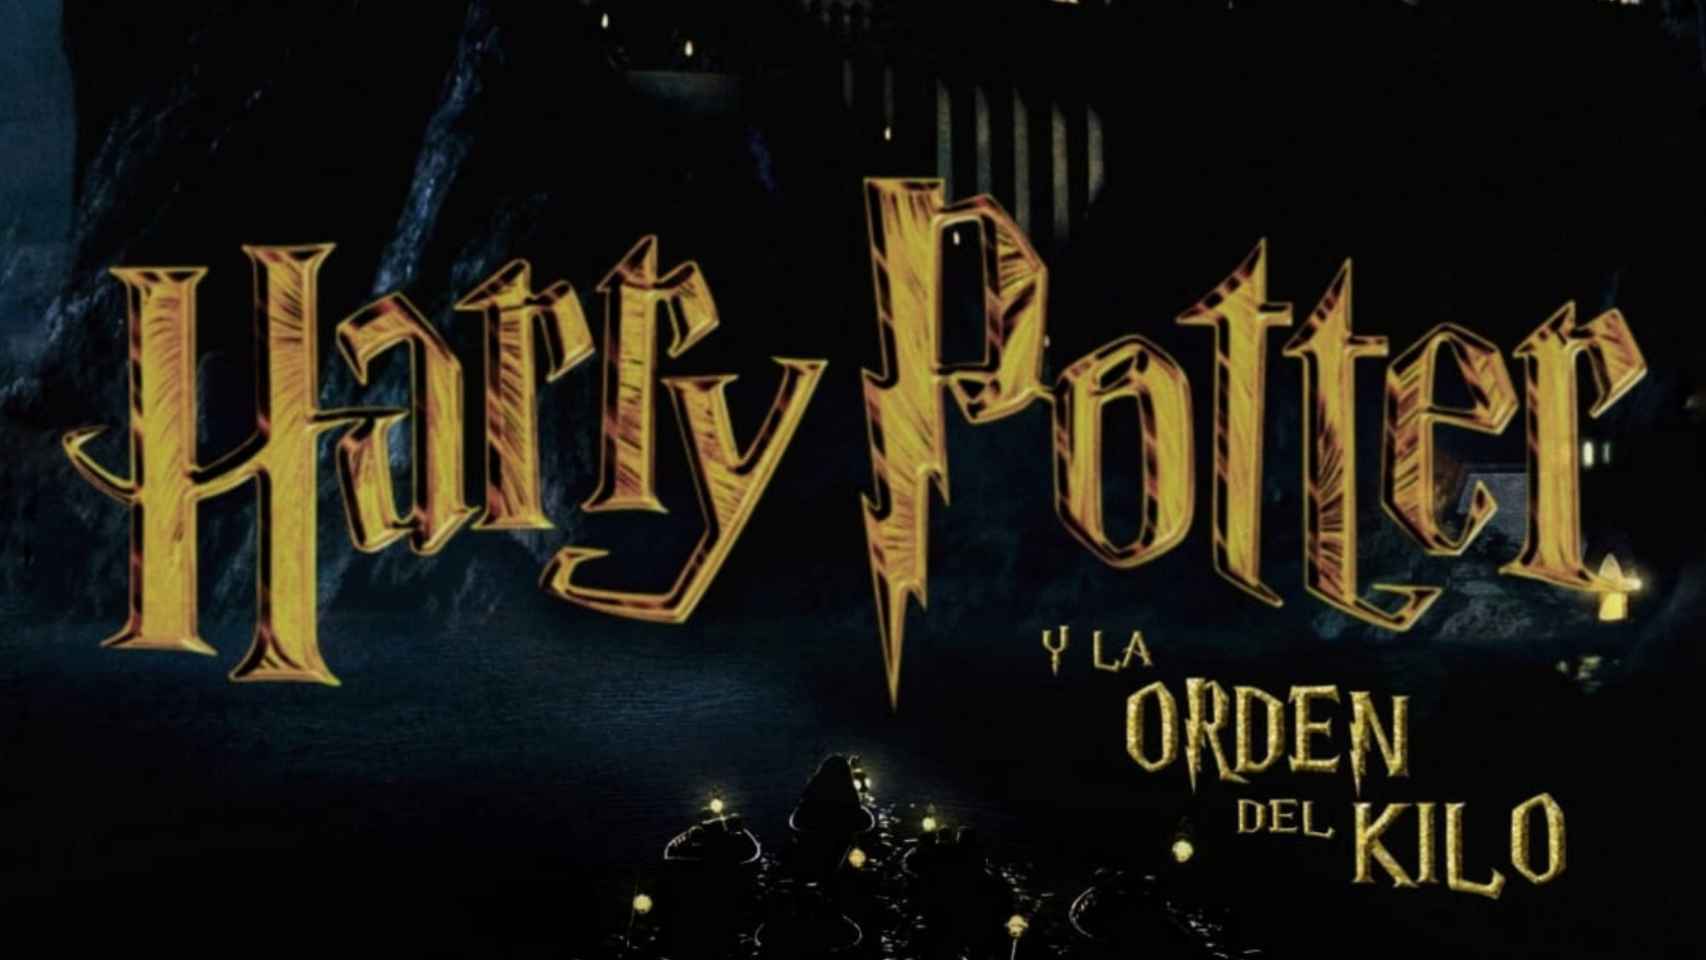 Cartel patrocinador de la campaña inspirado en Harry Potter.